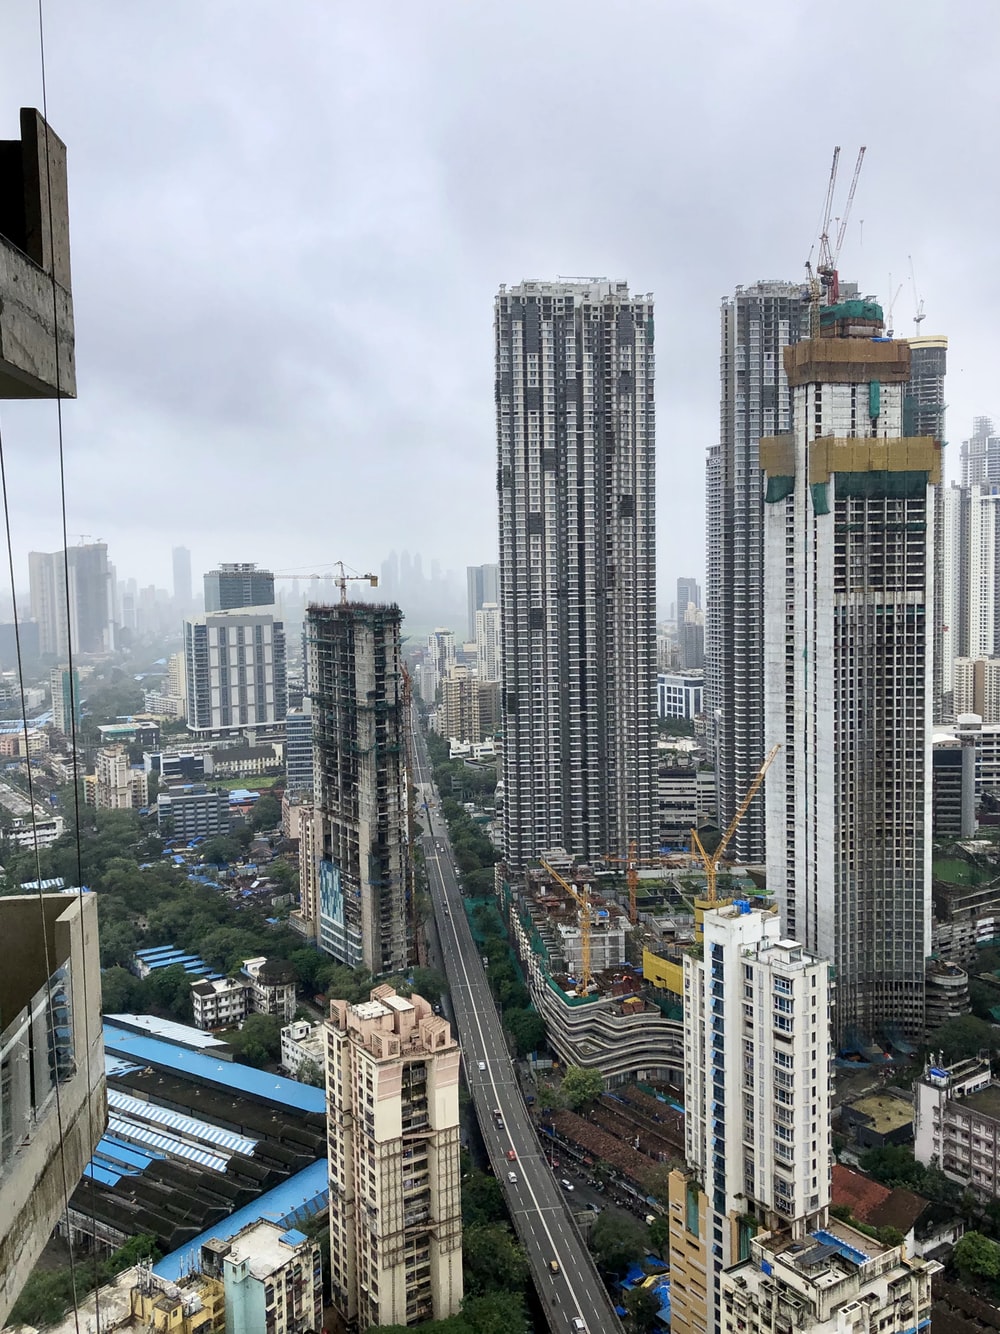 Stunning Mumbai Picture [HD]. Download Free Image